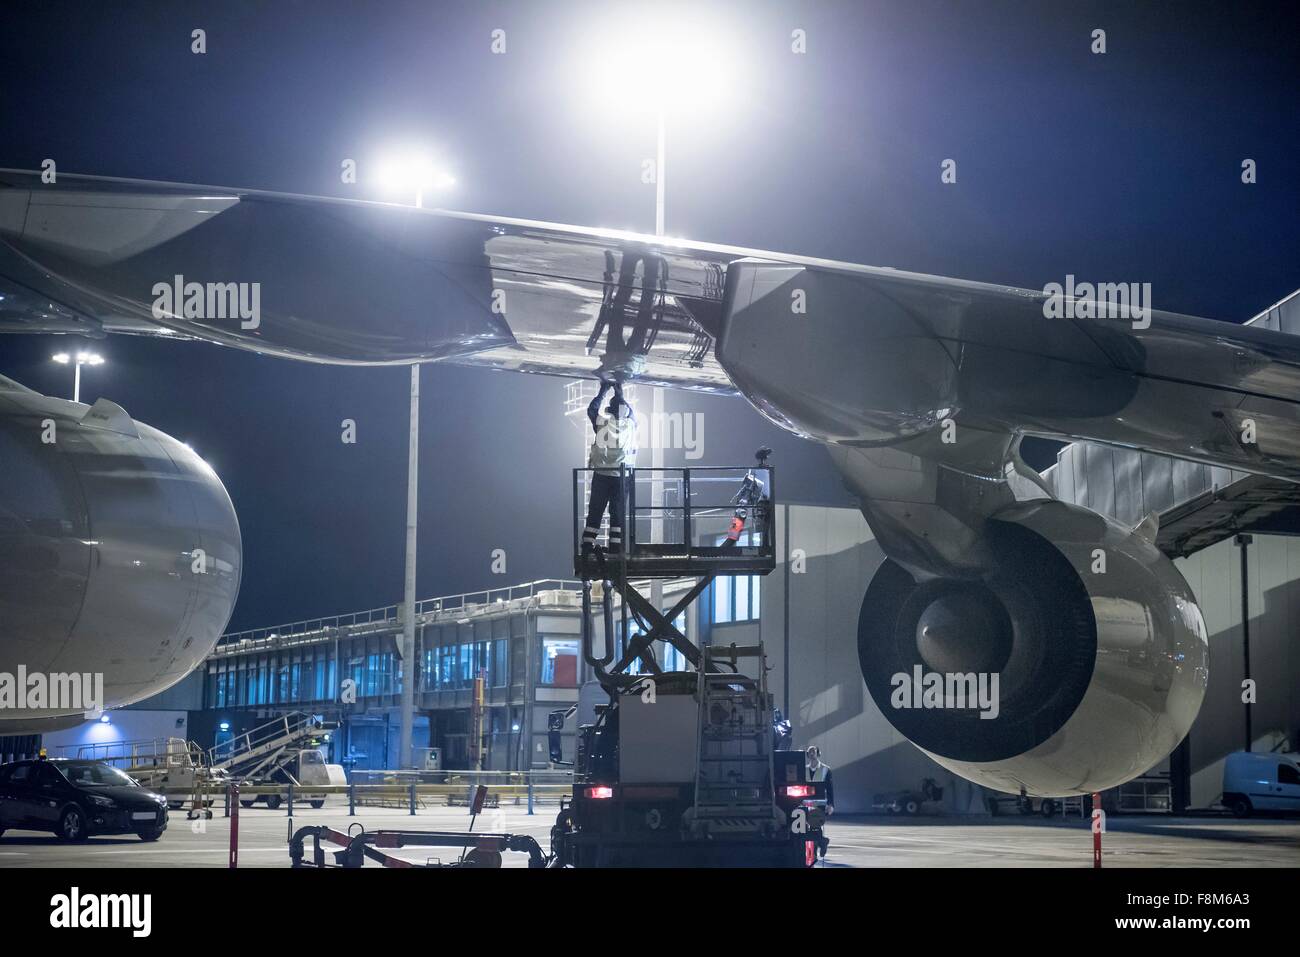 Miembro de la tripulación de tierra el repostaje de aviones A380 en la noche Foto de stock